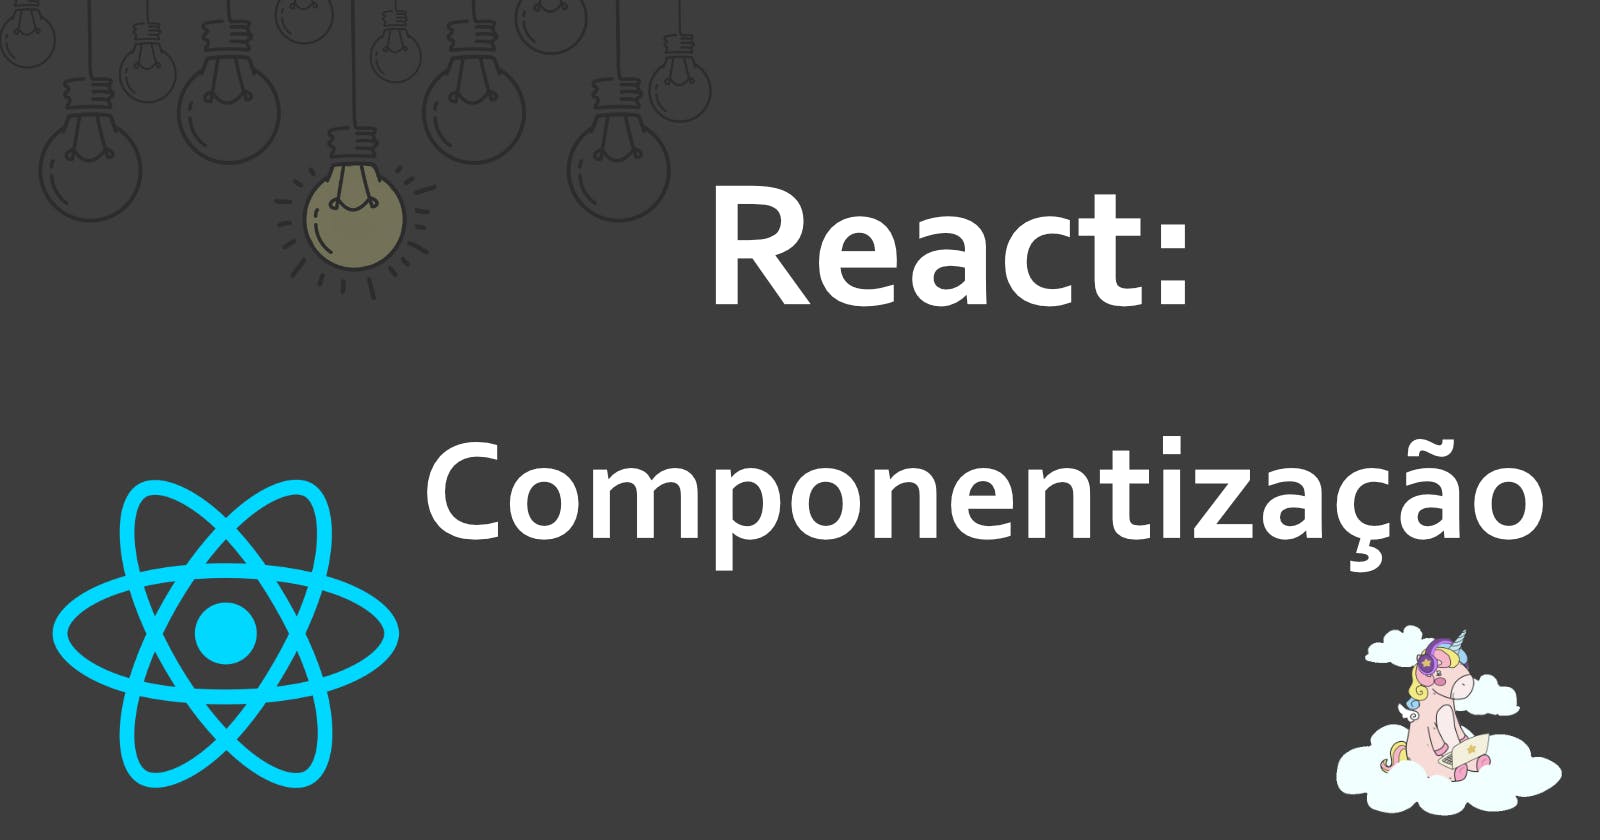 Dicas de como componentizar sua aplicação React